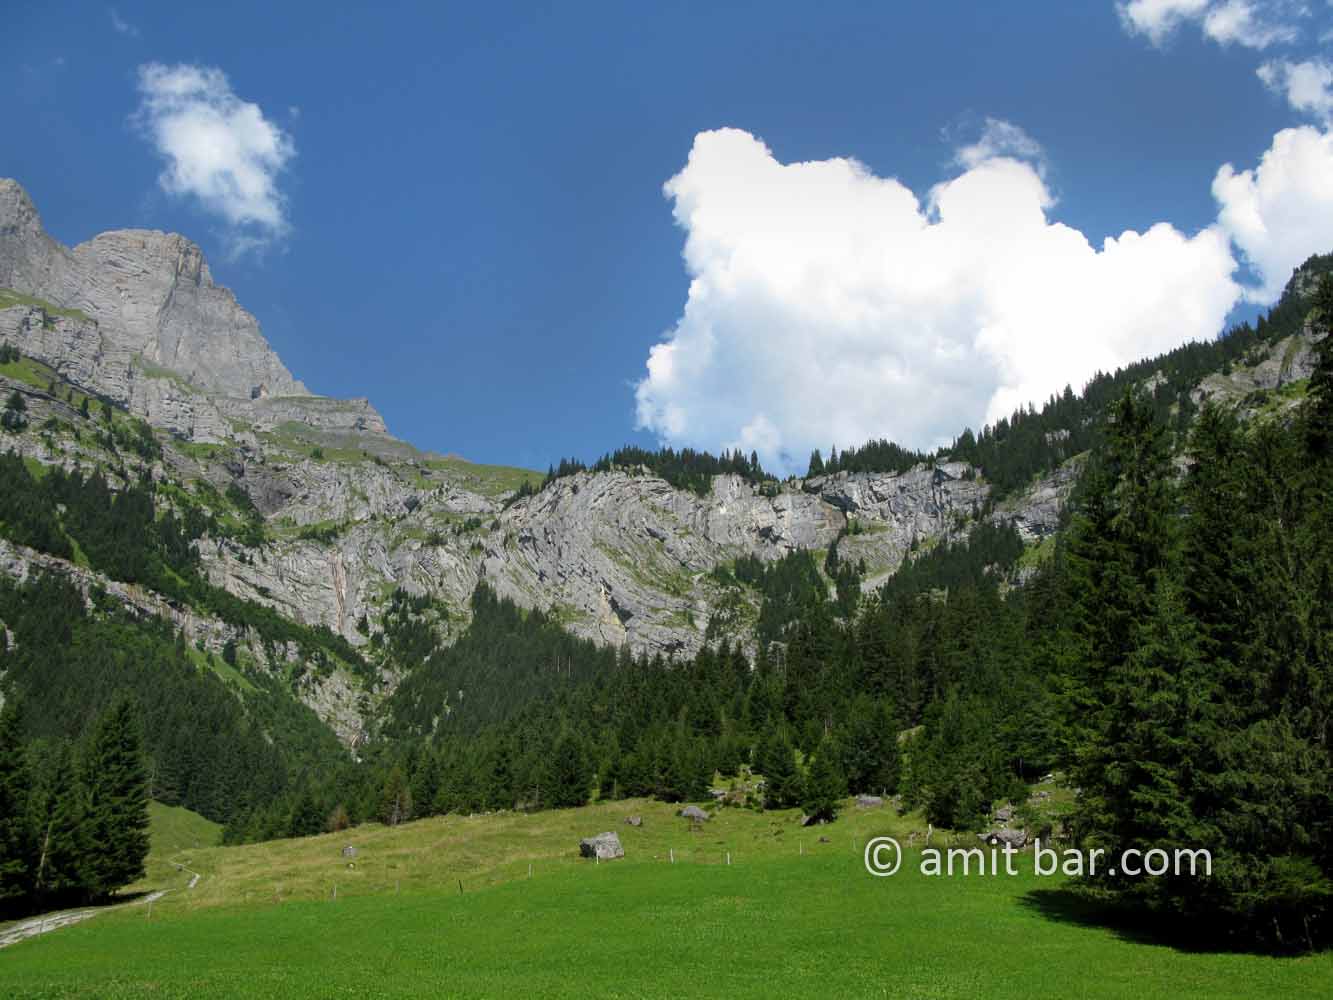 Engeleberg III: Engeleberg mountains, Switzerland